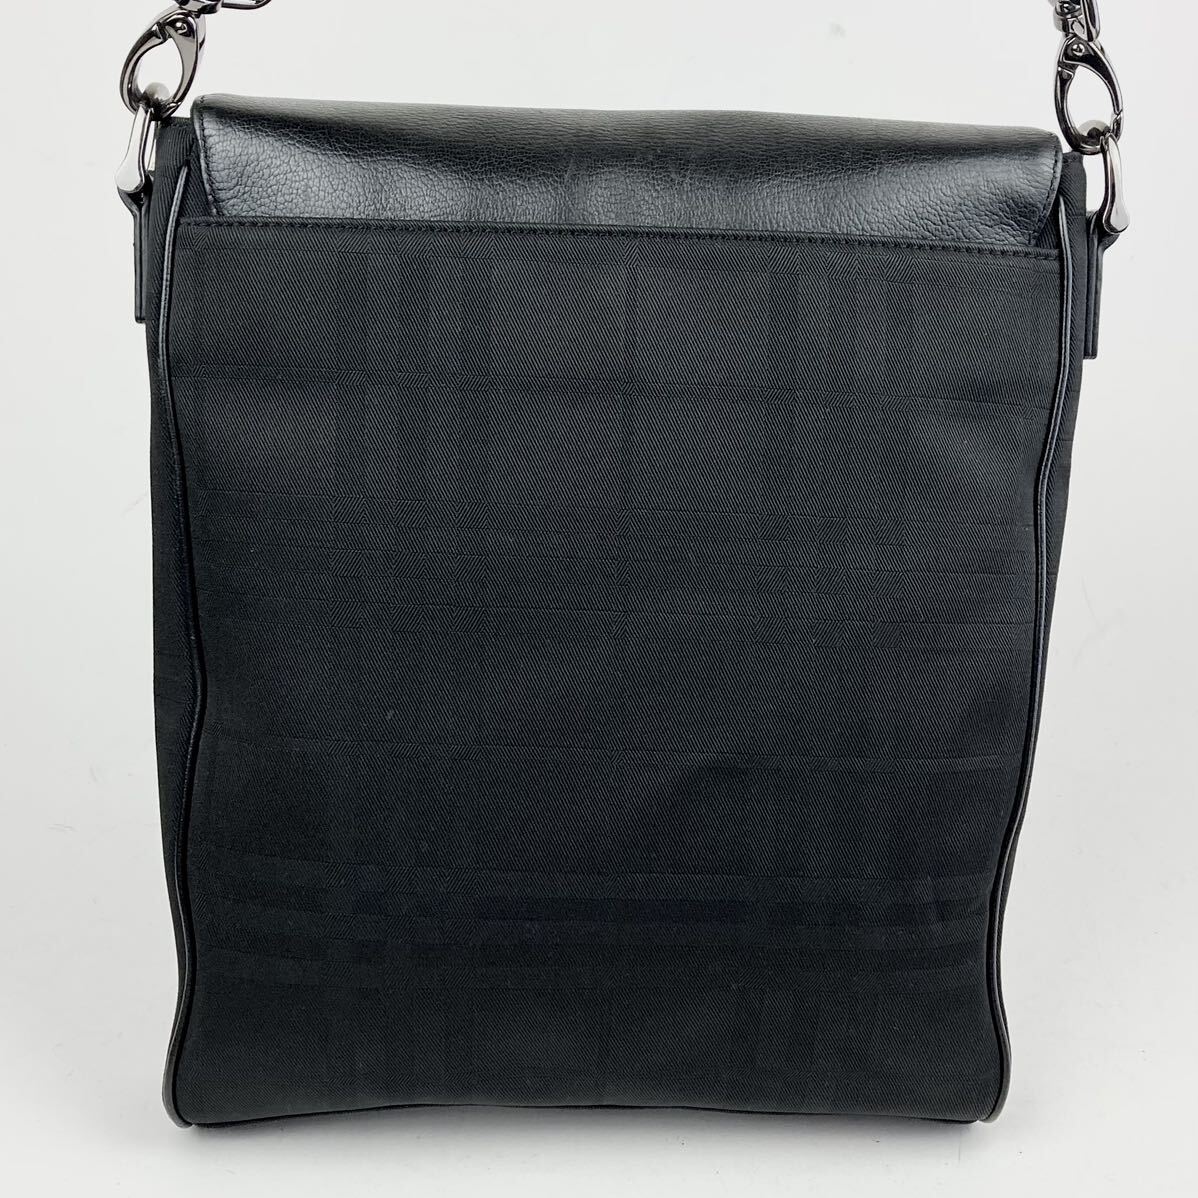 A4 место хранения / прекрасный товар BURBERRY Burberry сумка на плечо наклонный .. корпус mesenja- мужской бизнес парусина кожа черный чёрный 